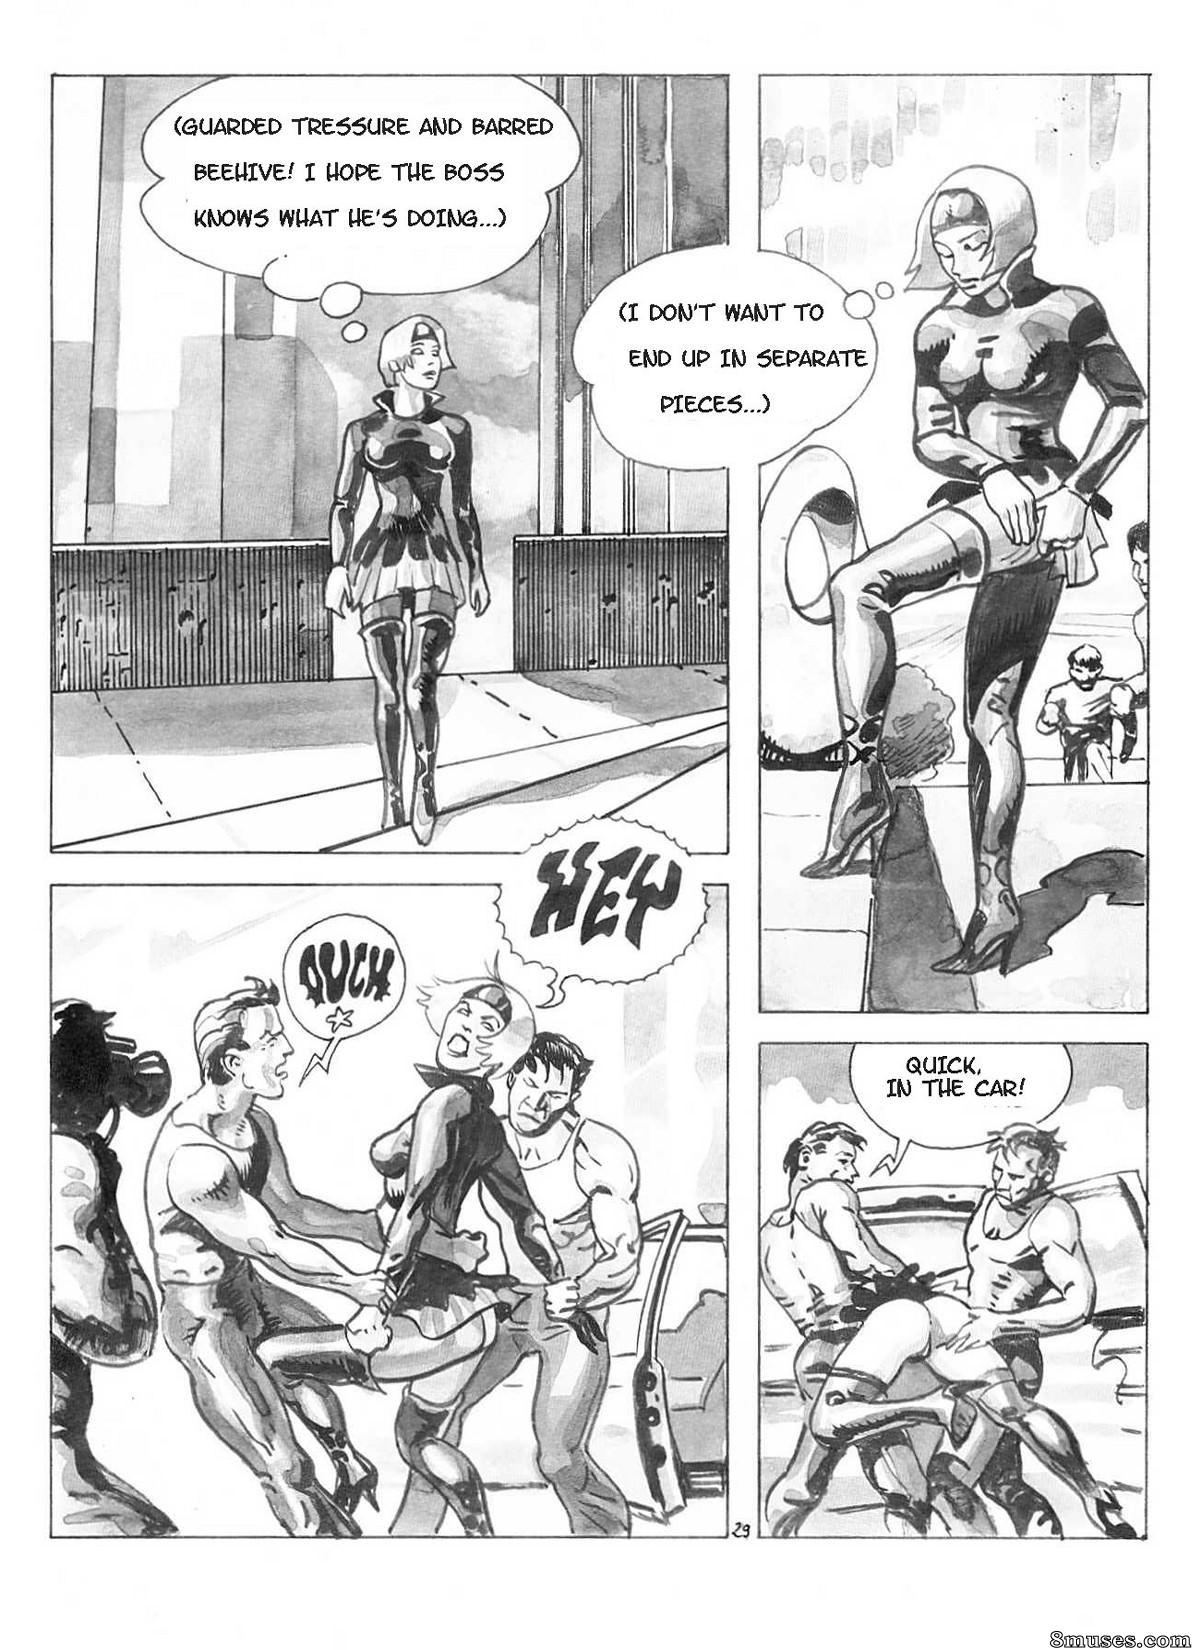 Cartoon Porn Spy - The Spy Issue 1 - 8muses Comics - Sex Comics and Porn Cartoons